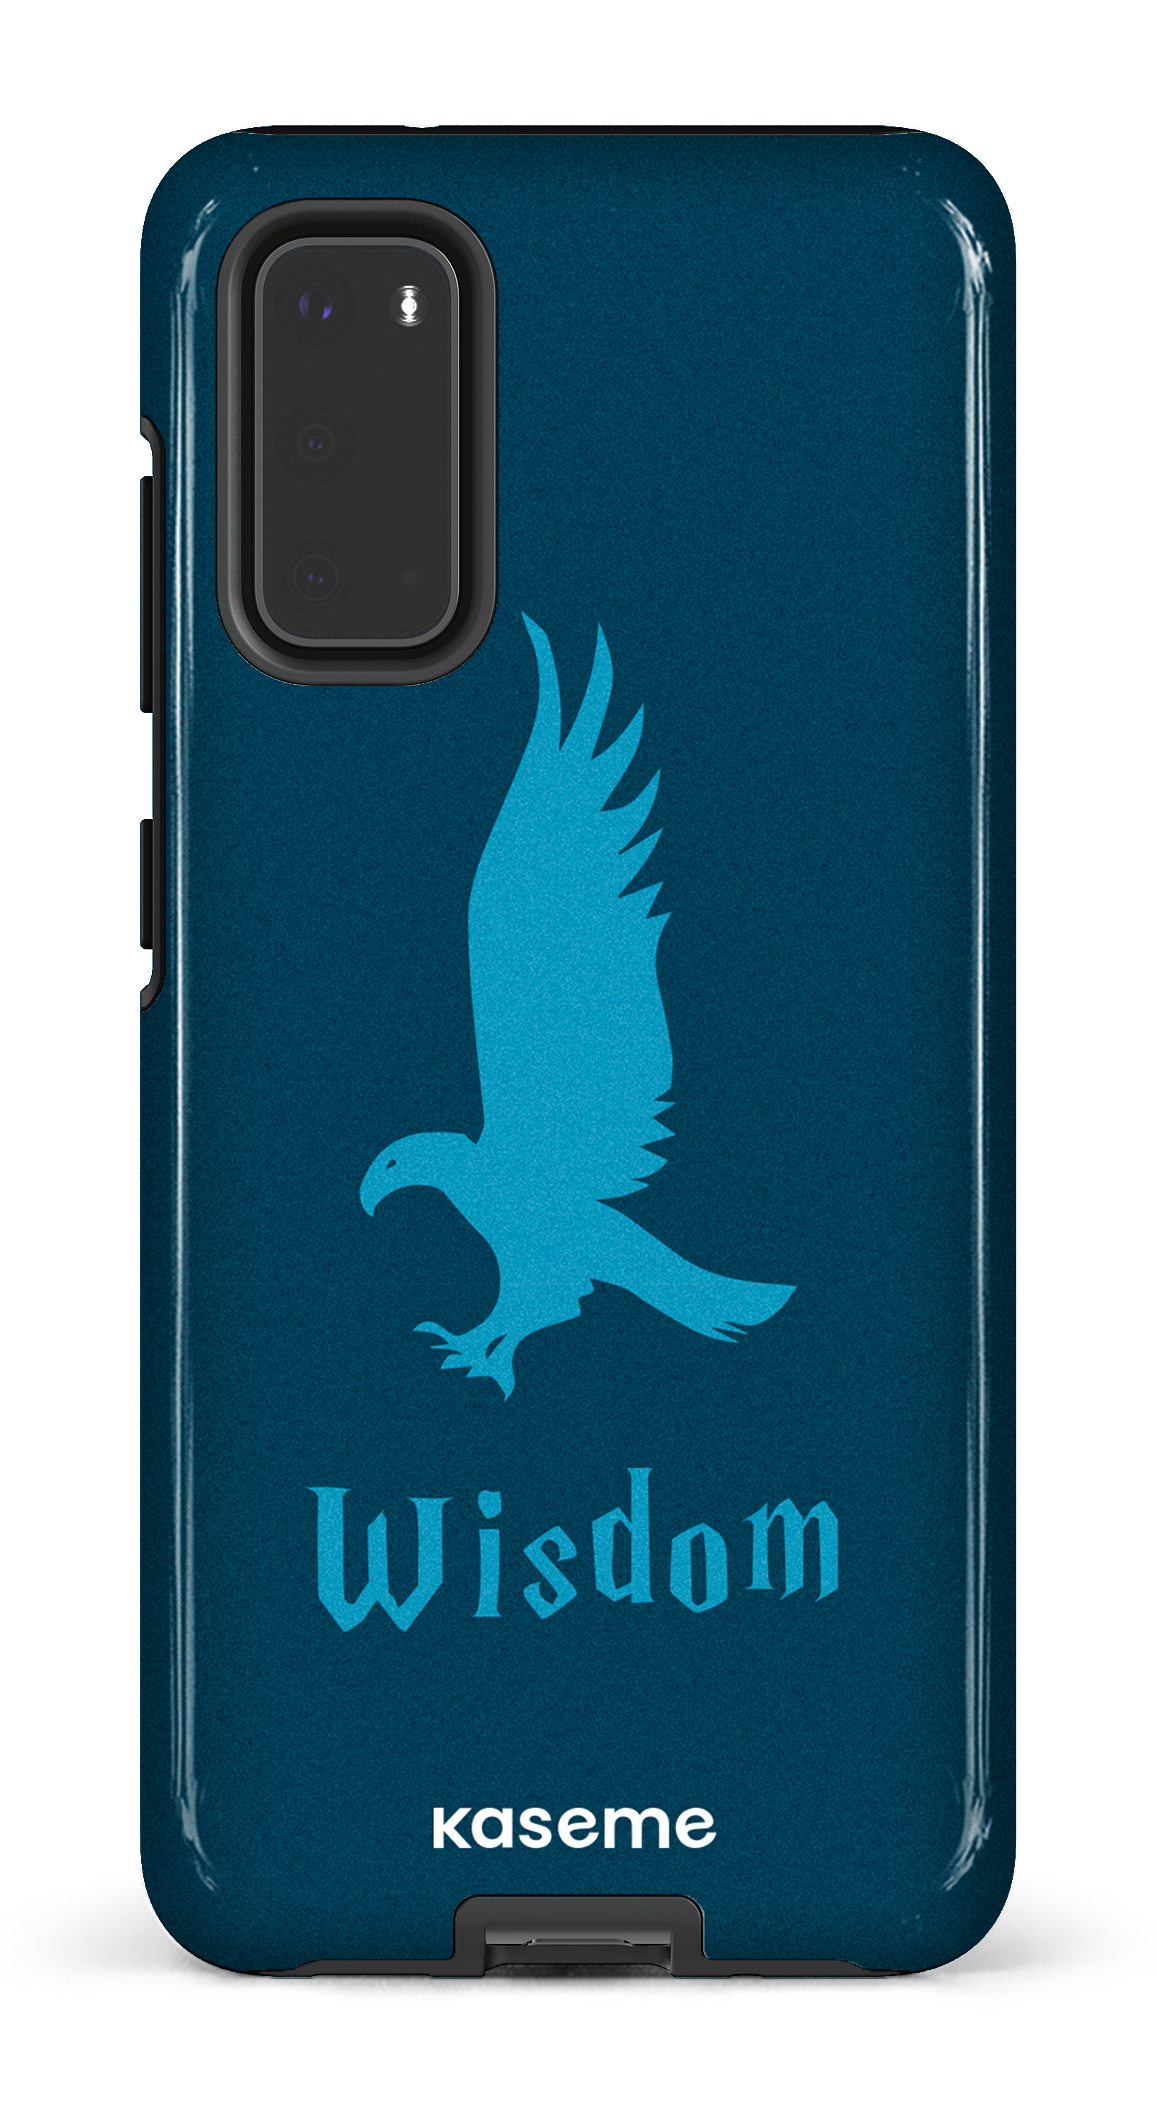 Wisdom - Galaxy S20